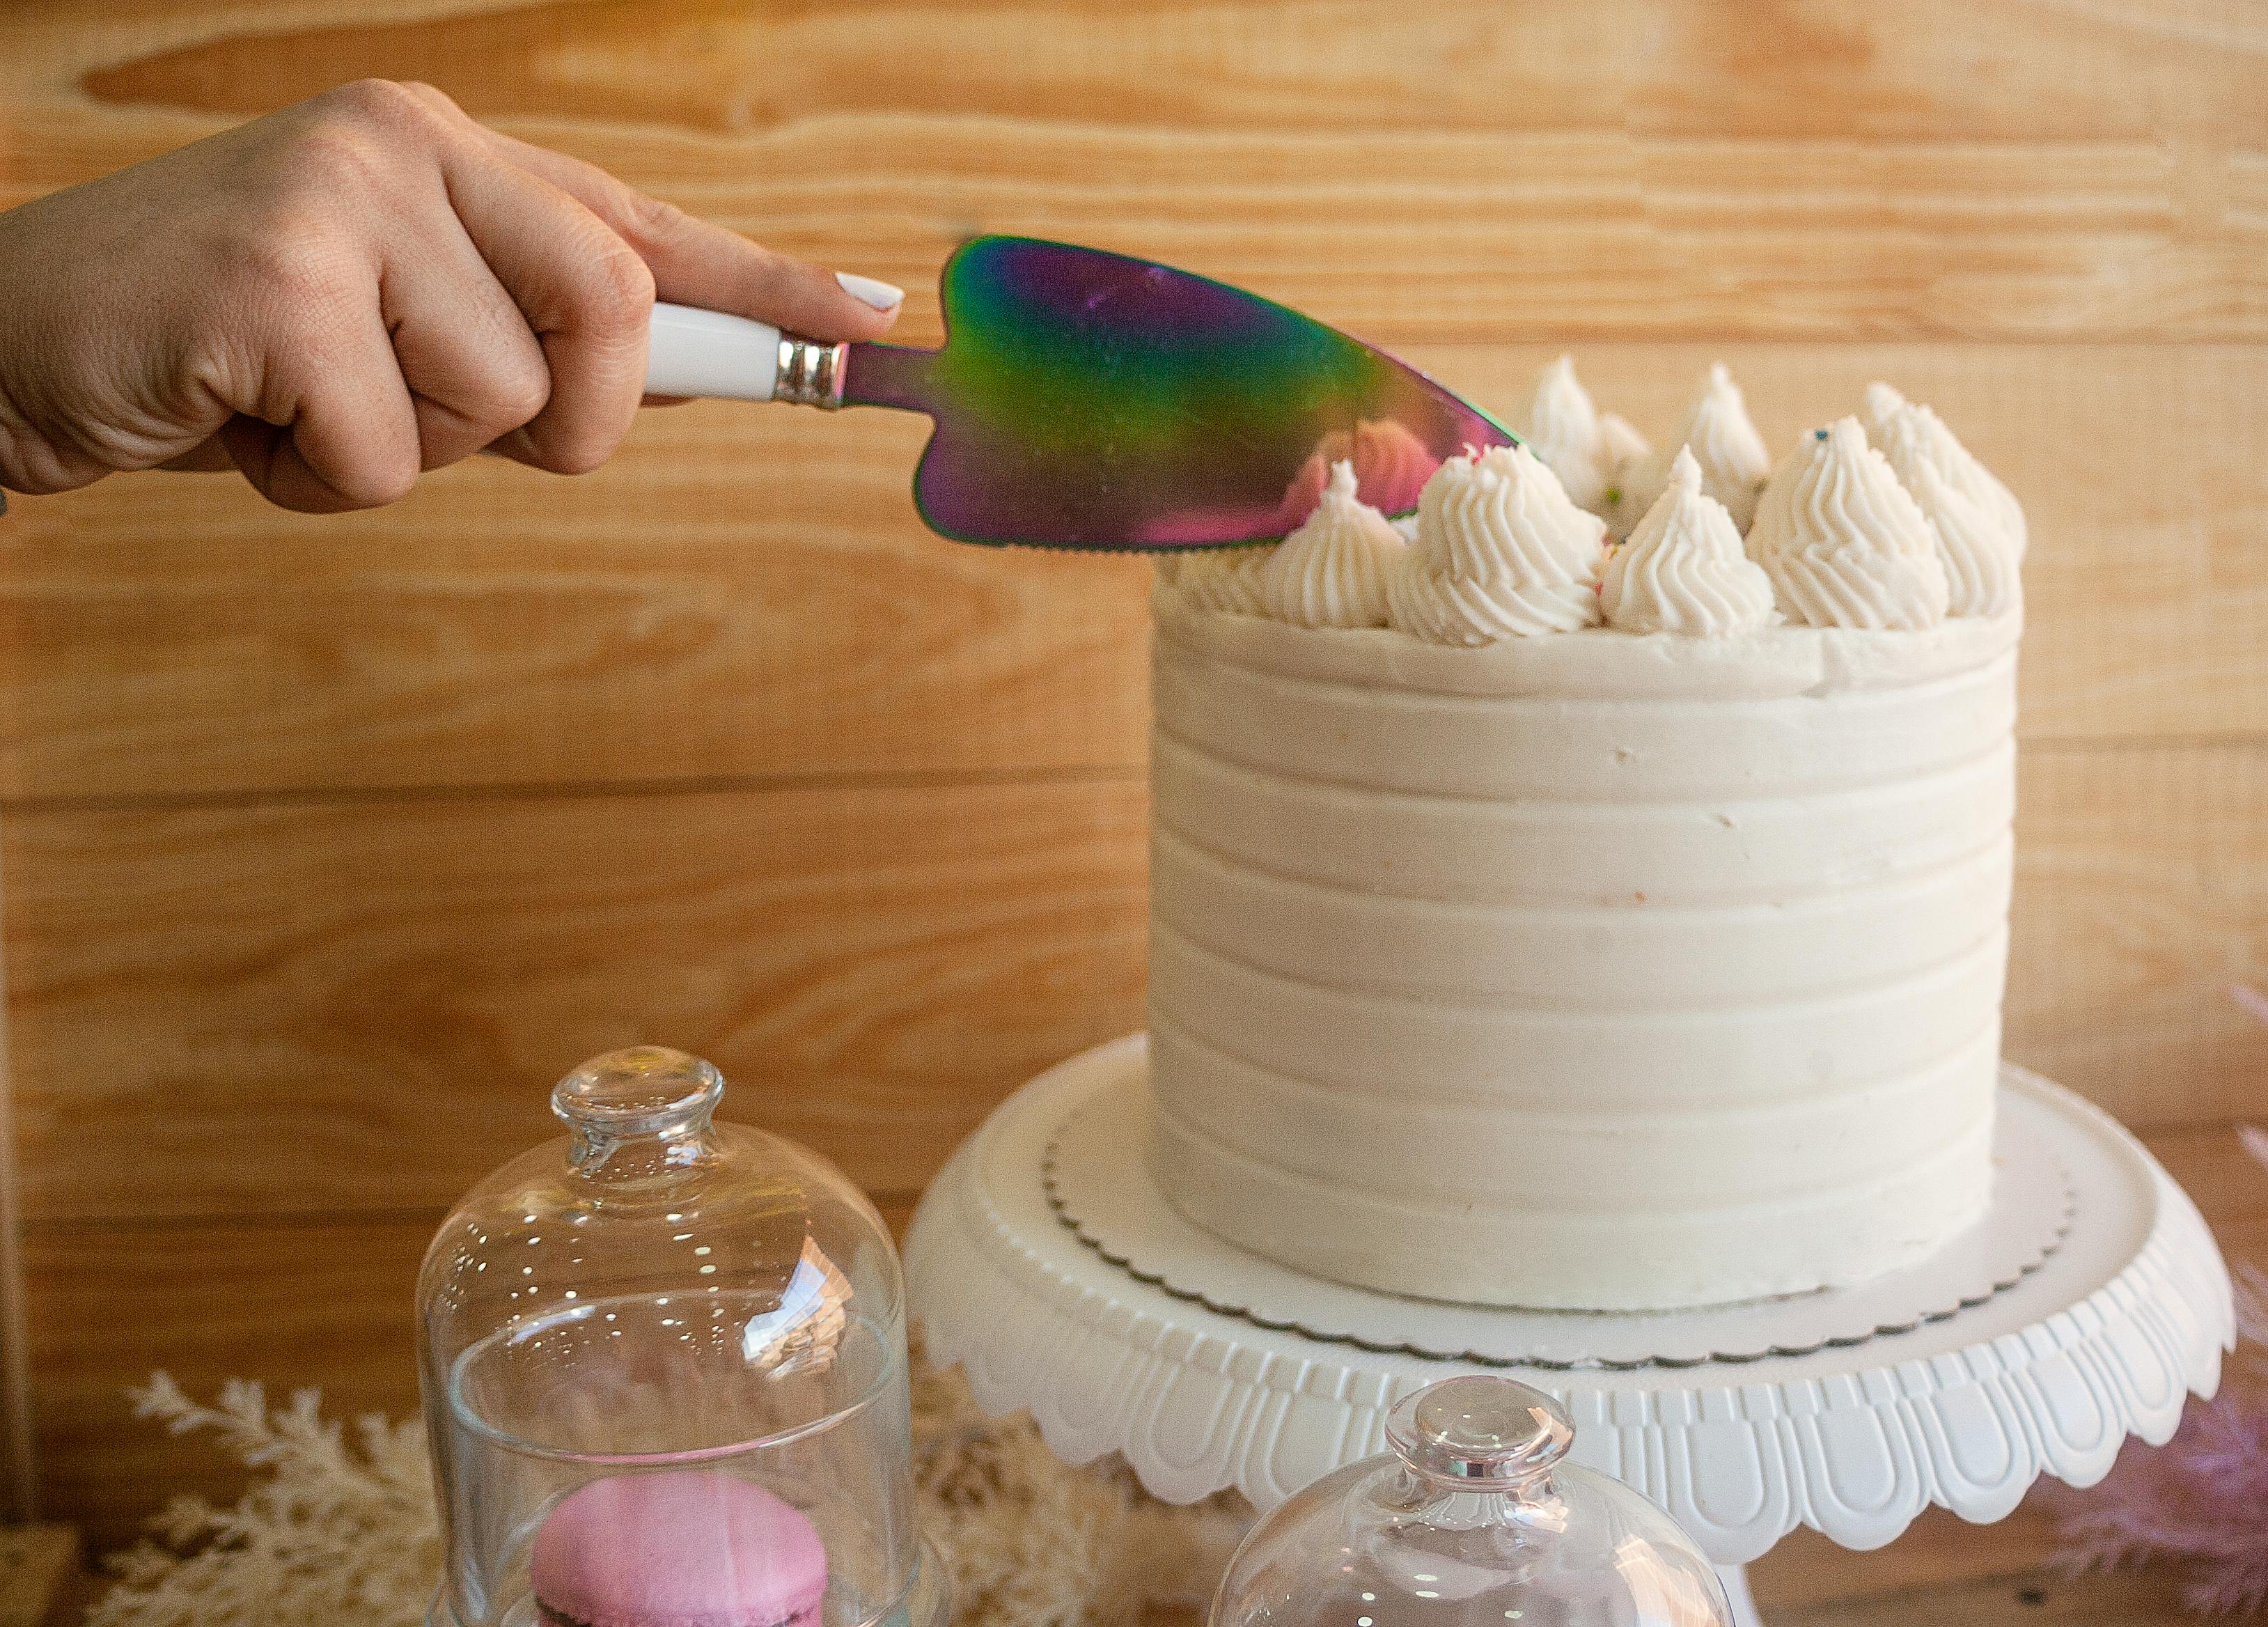 Una mujer cortando un Pastel | Fuente: Pexels